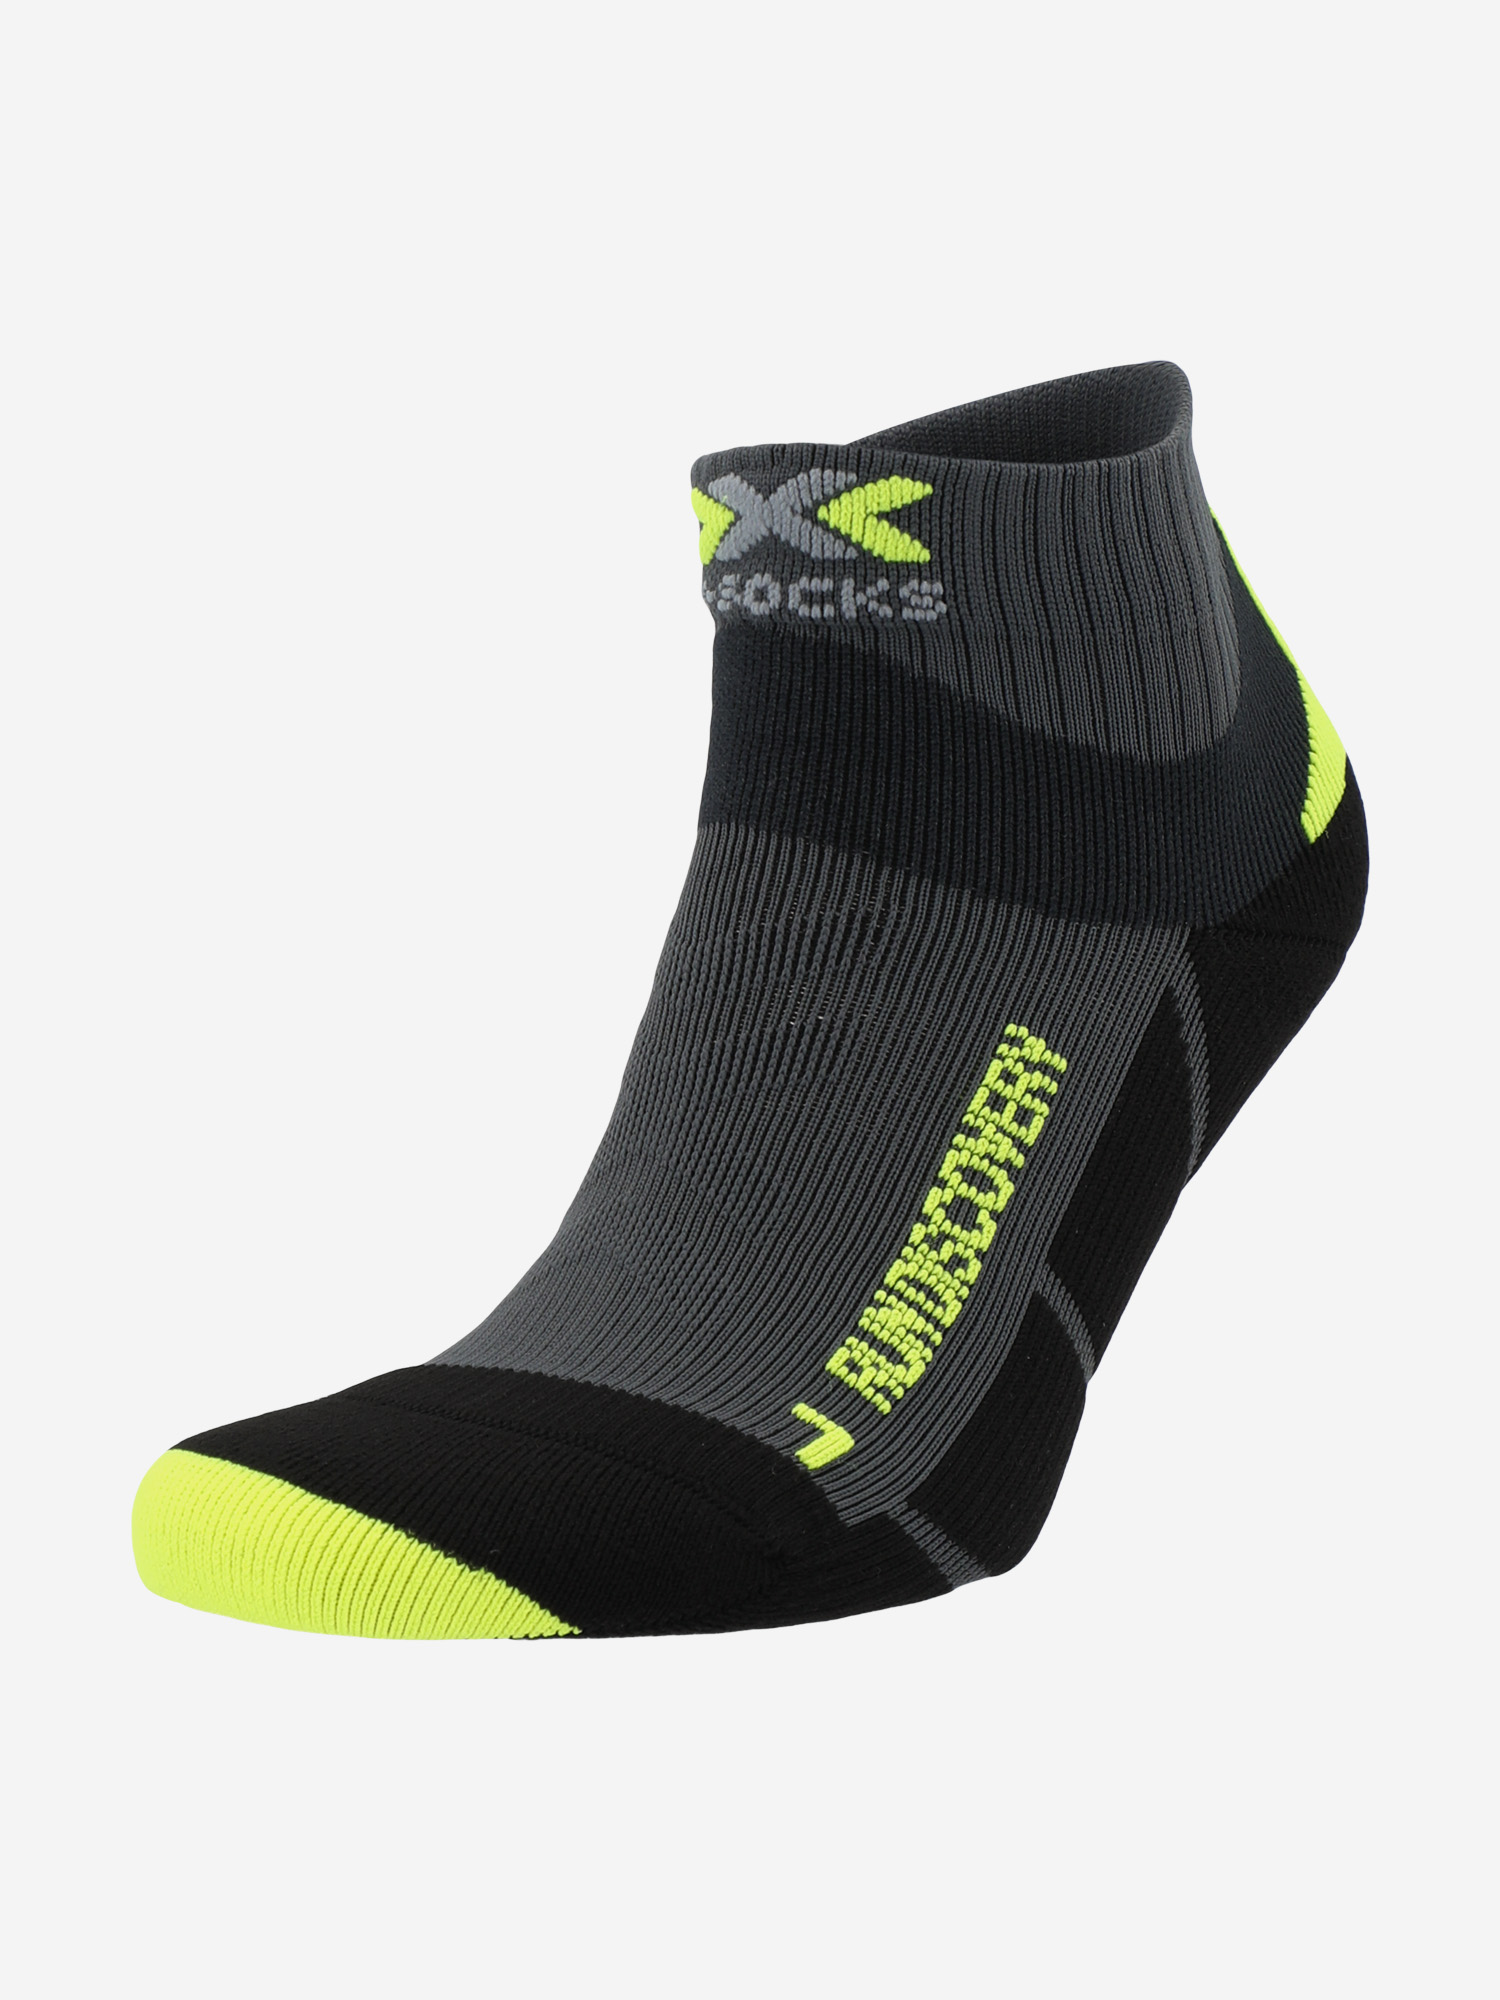 Носки X-Socks Run Discovery, 1 пара, Серый носки с рисунками st friday socks левый левый серый